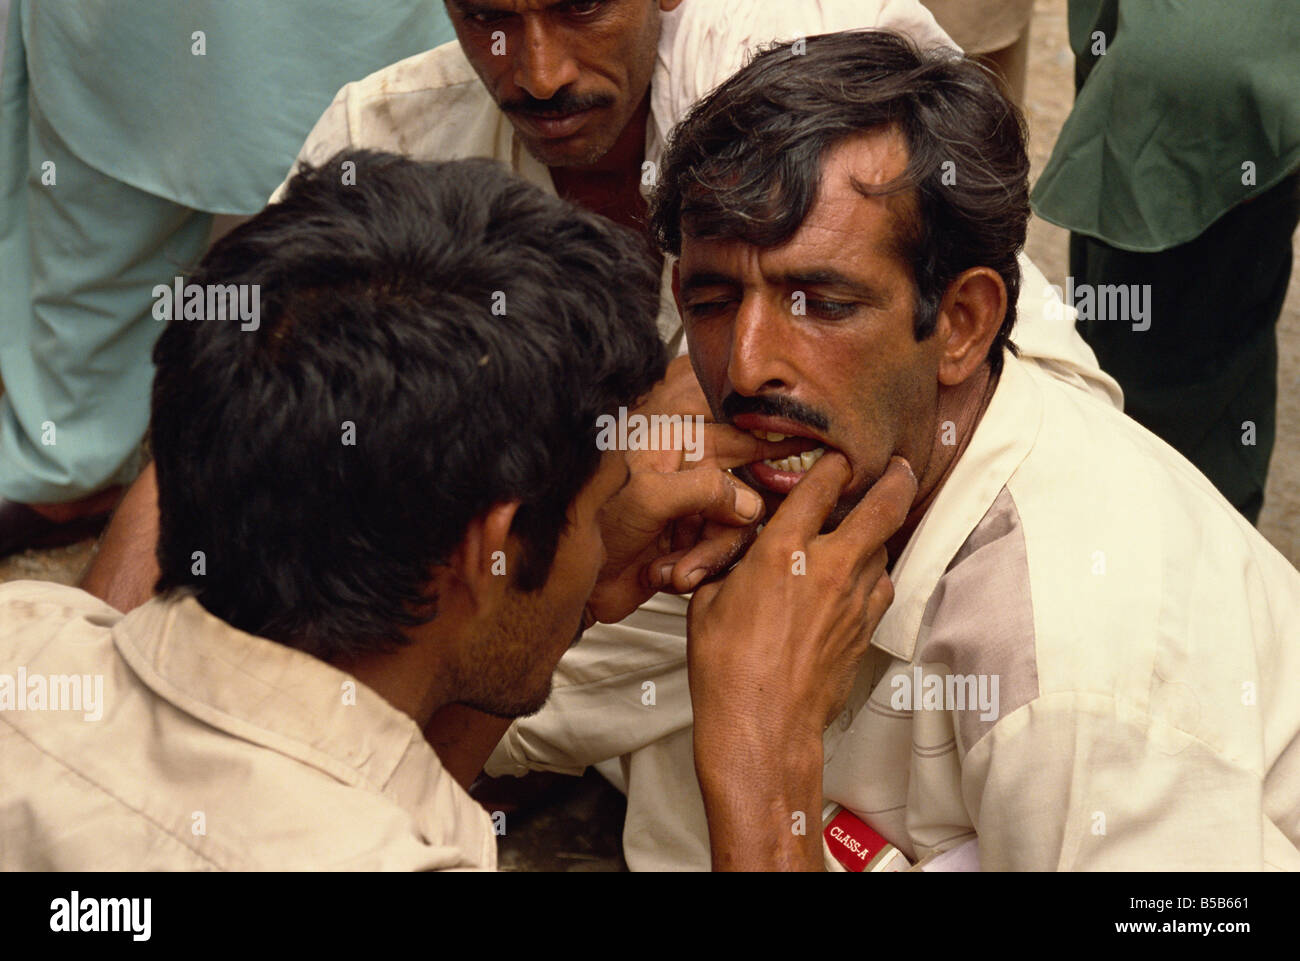 Street dentist, Rawalpindi, Pakistan Stock Photo